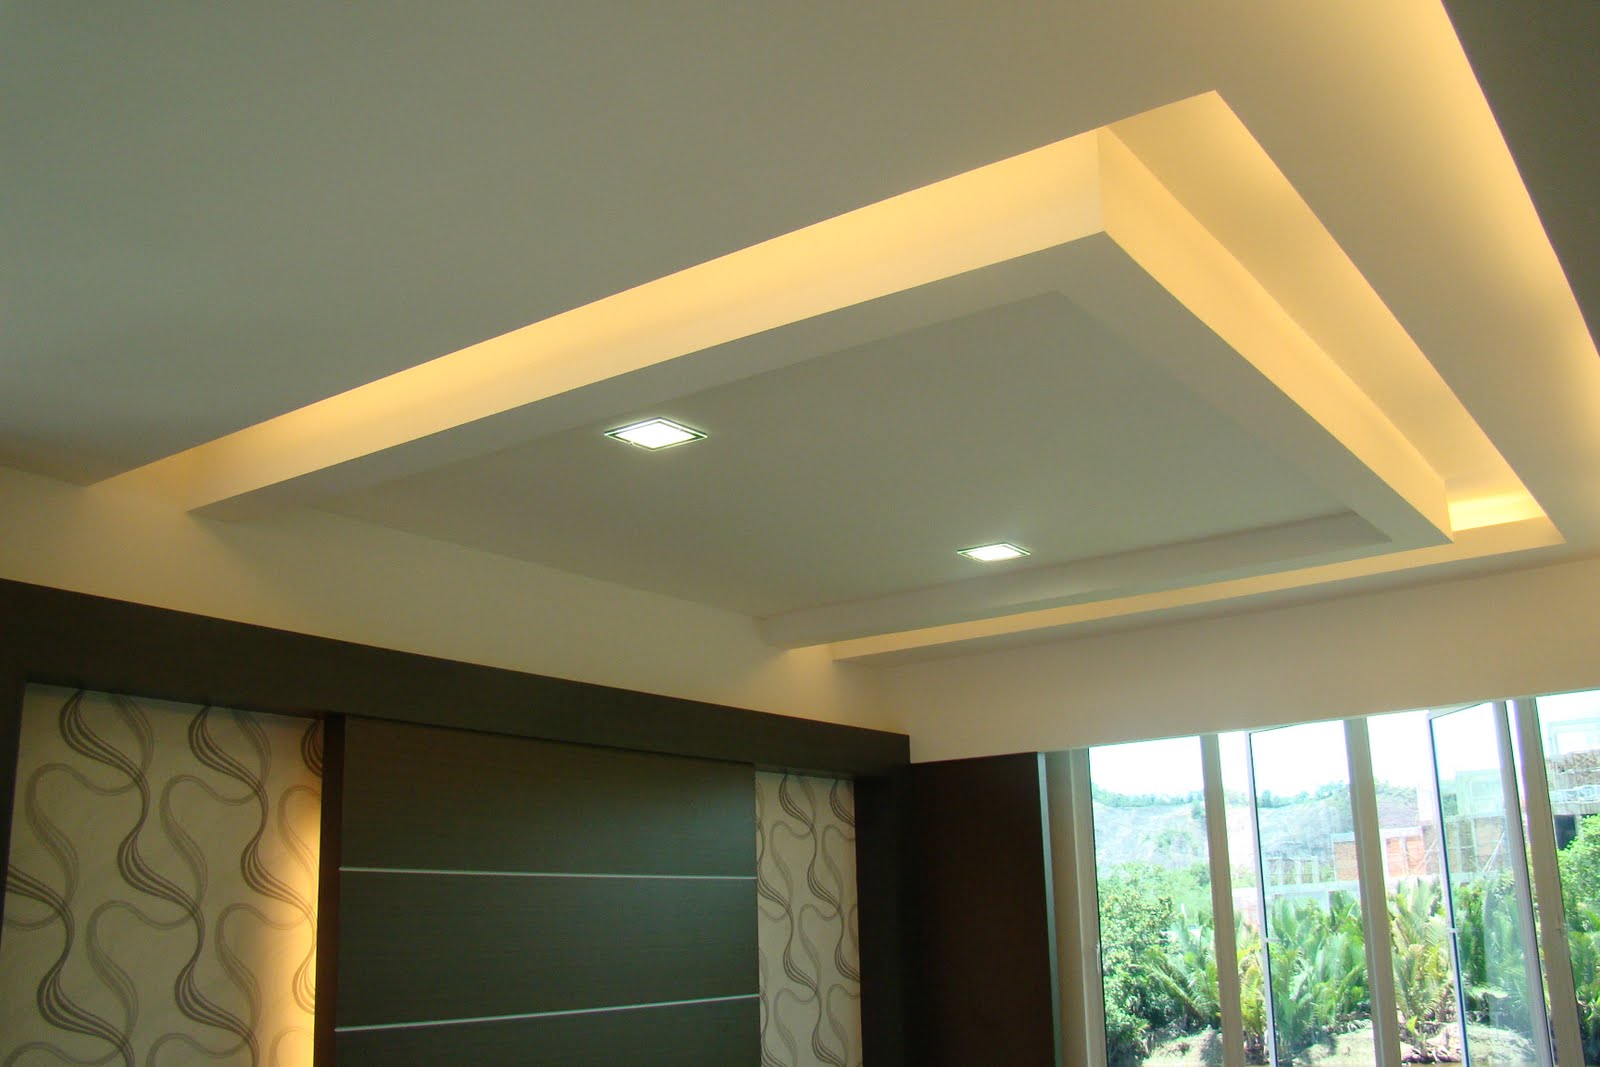 plaster ceiling design for living room